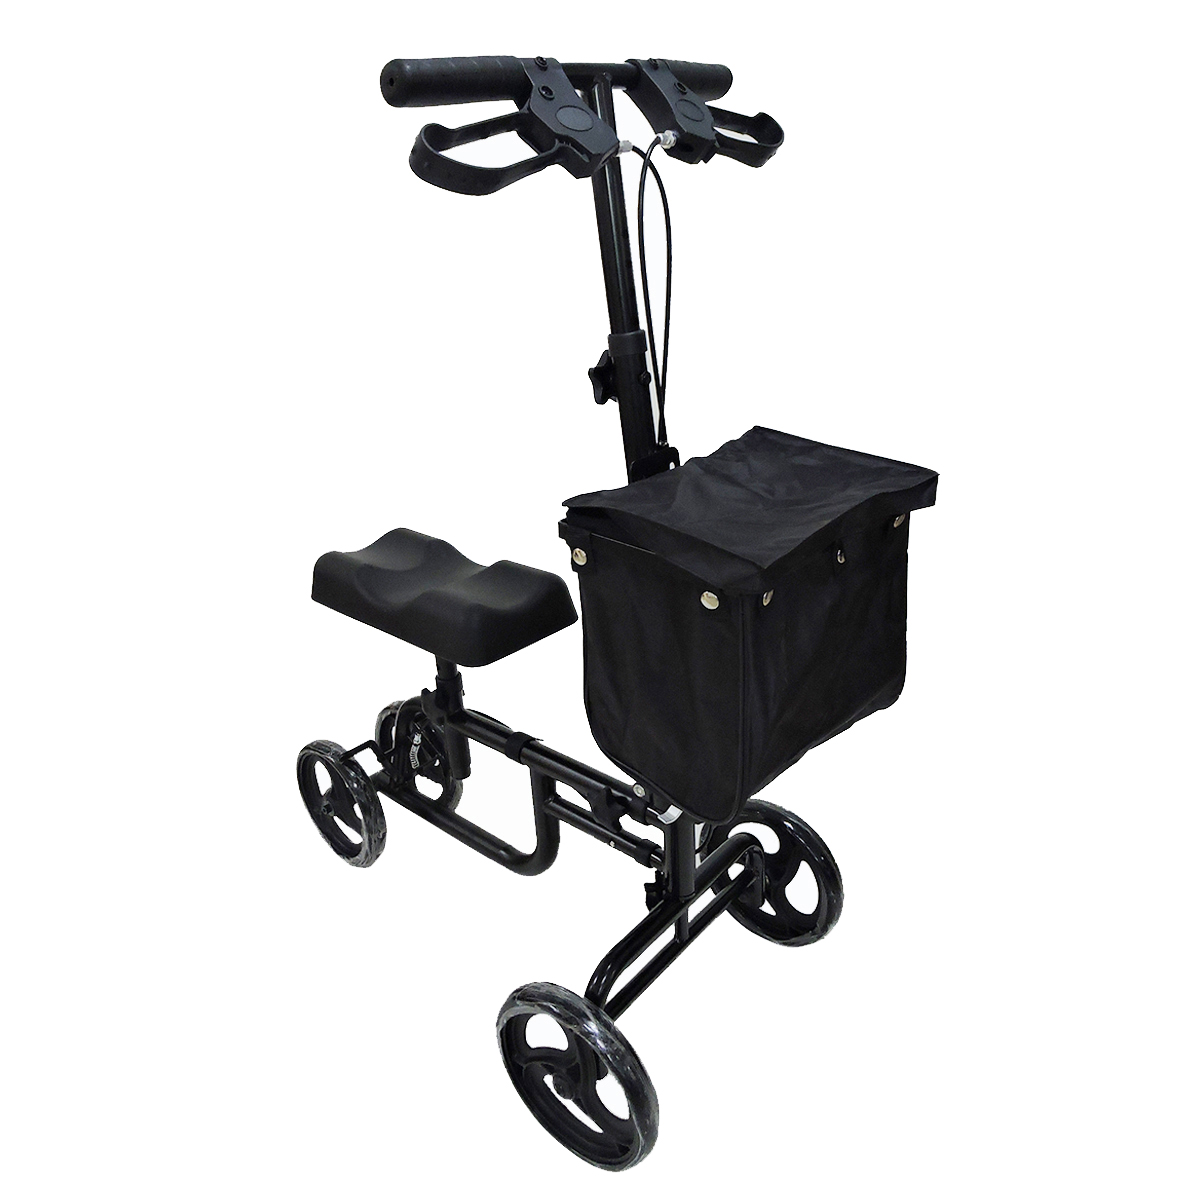 Mobility-Knee-Walker-Scooter-Roller-Crutch-Leg-Steerable-Foldable-Design-Adjustable-Height-Adjustabl-1940054-7